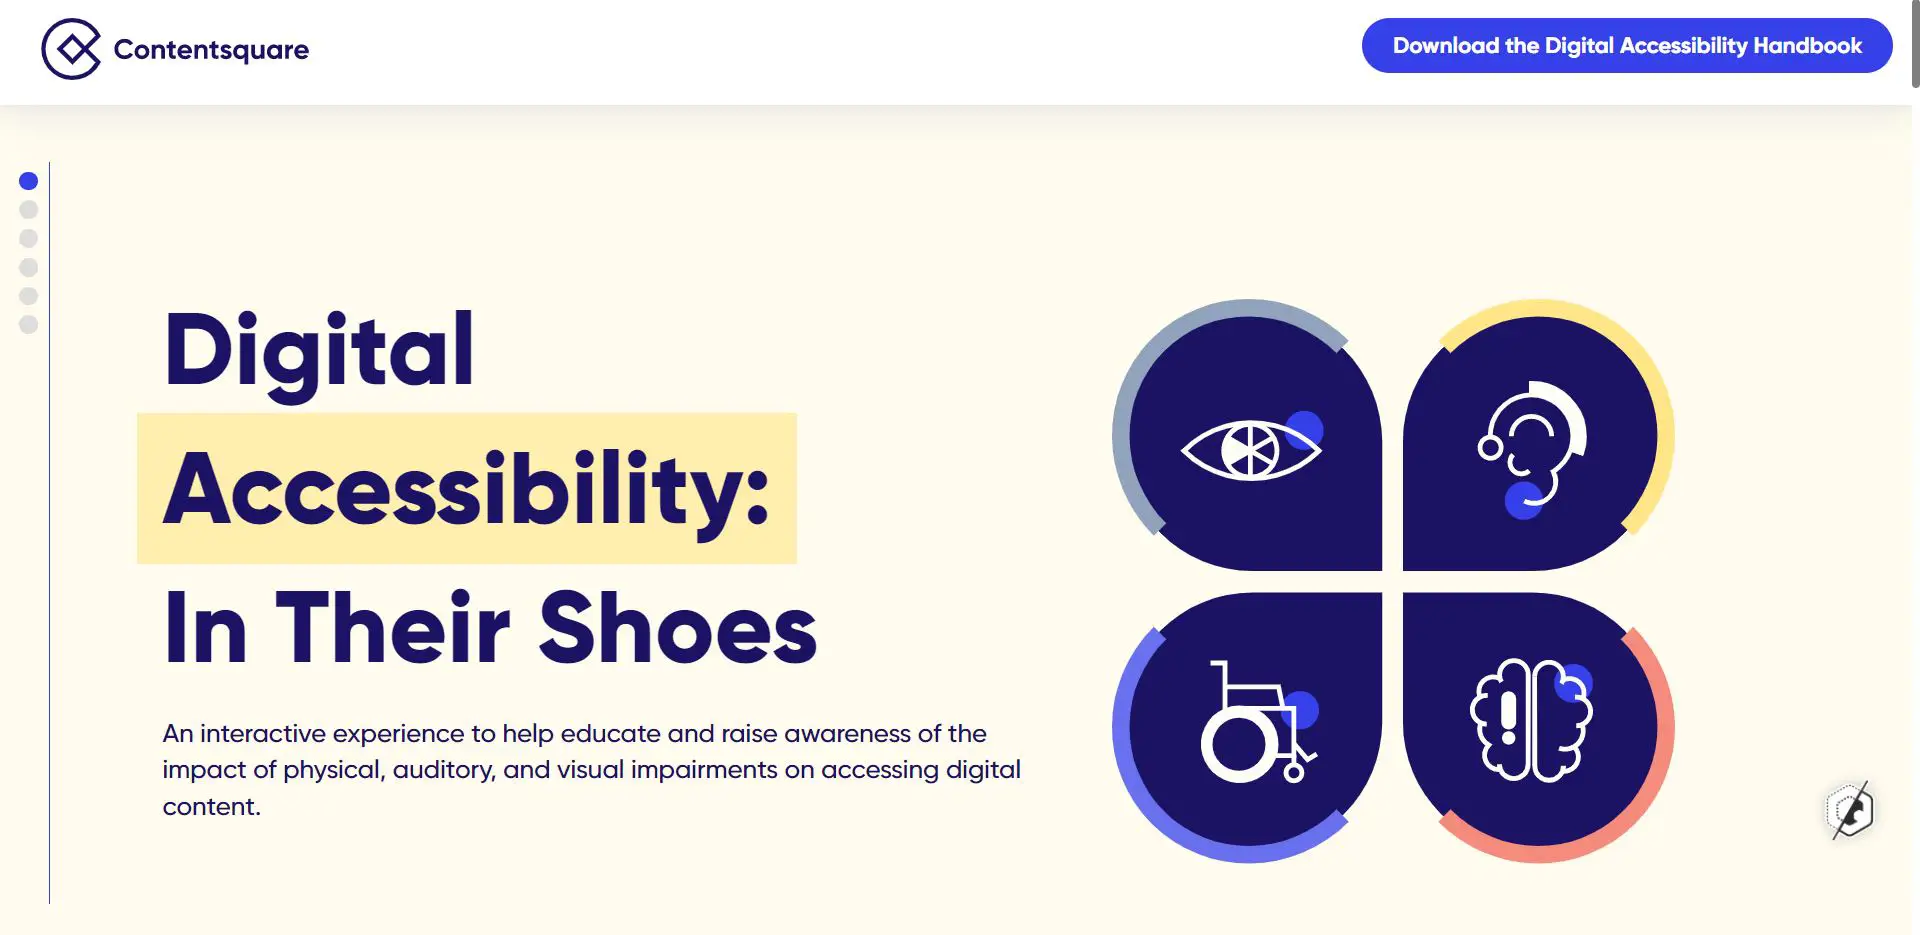 Aperçu du site In Their Shoes de ContentSquare sur l'accessibilité digitale